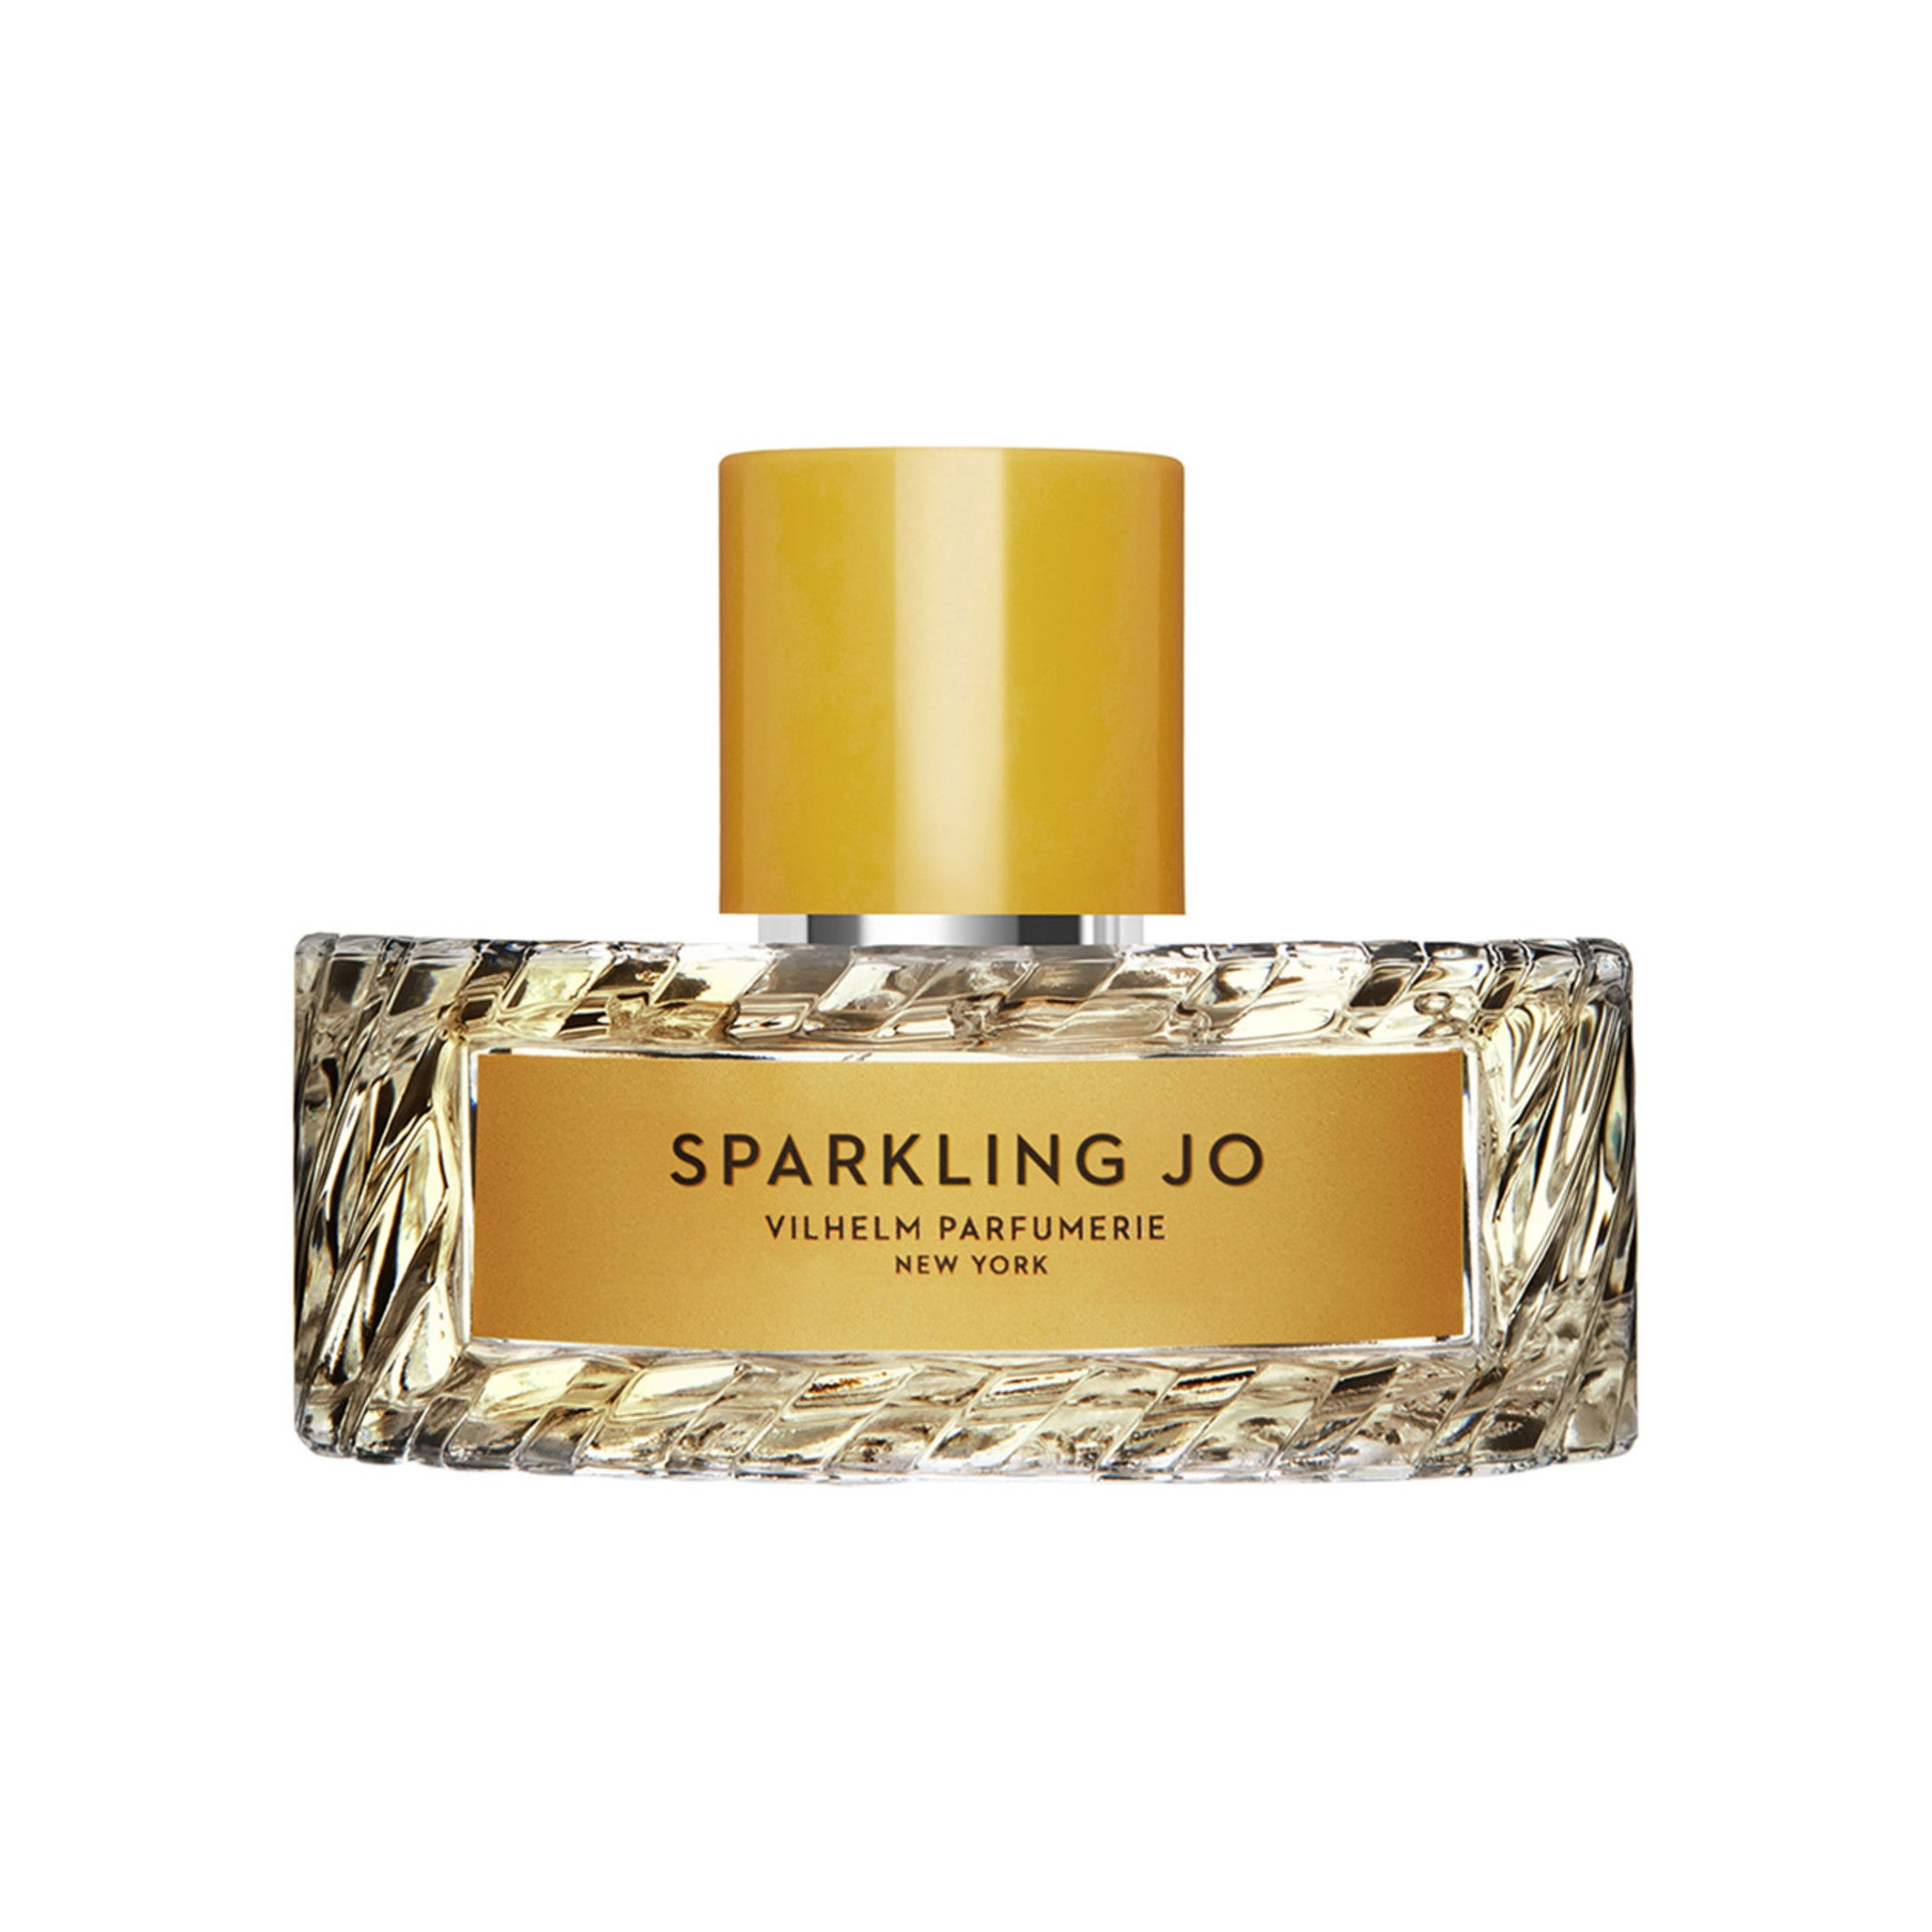 Vilhelm Parfumerie Sparkling Jo Eau de Parfum Size variant: 3.38 oz main image.